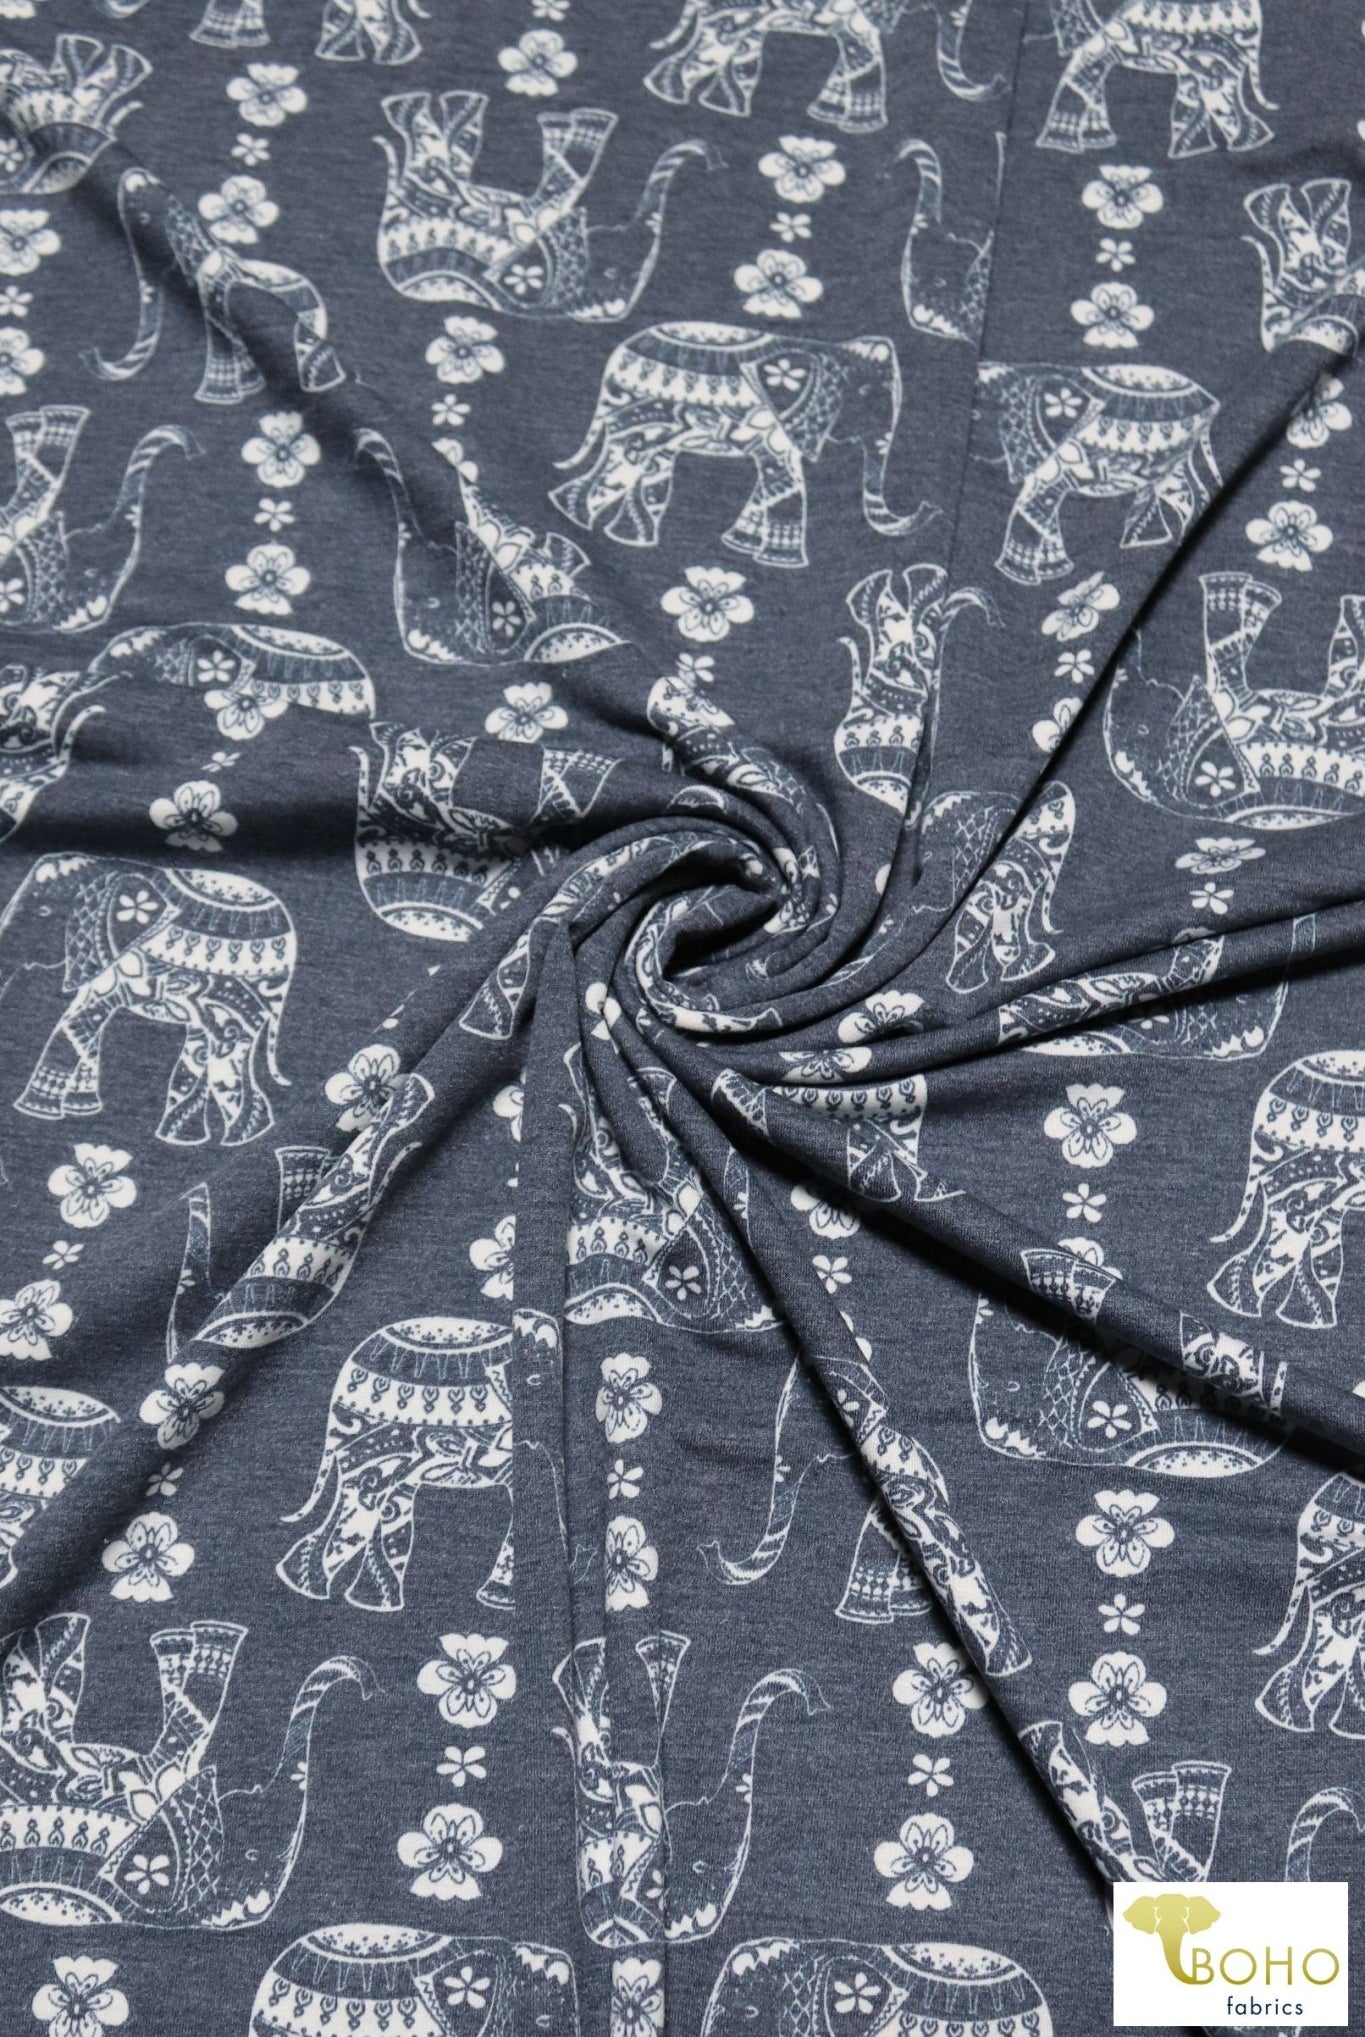 Elephant Parade on Navy, French Terry Knit Print. FTP-326-NVY - Boho Fabrics